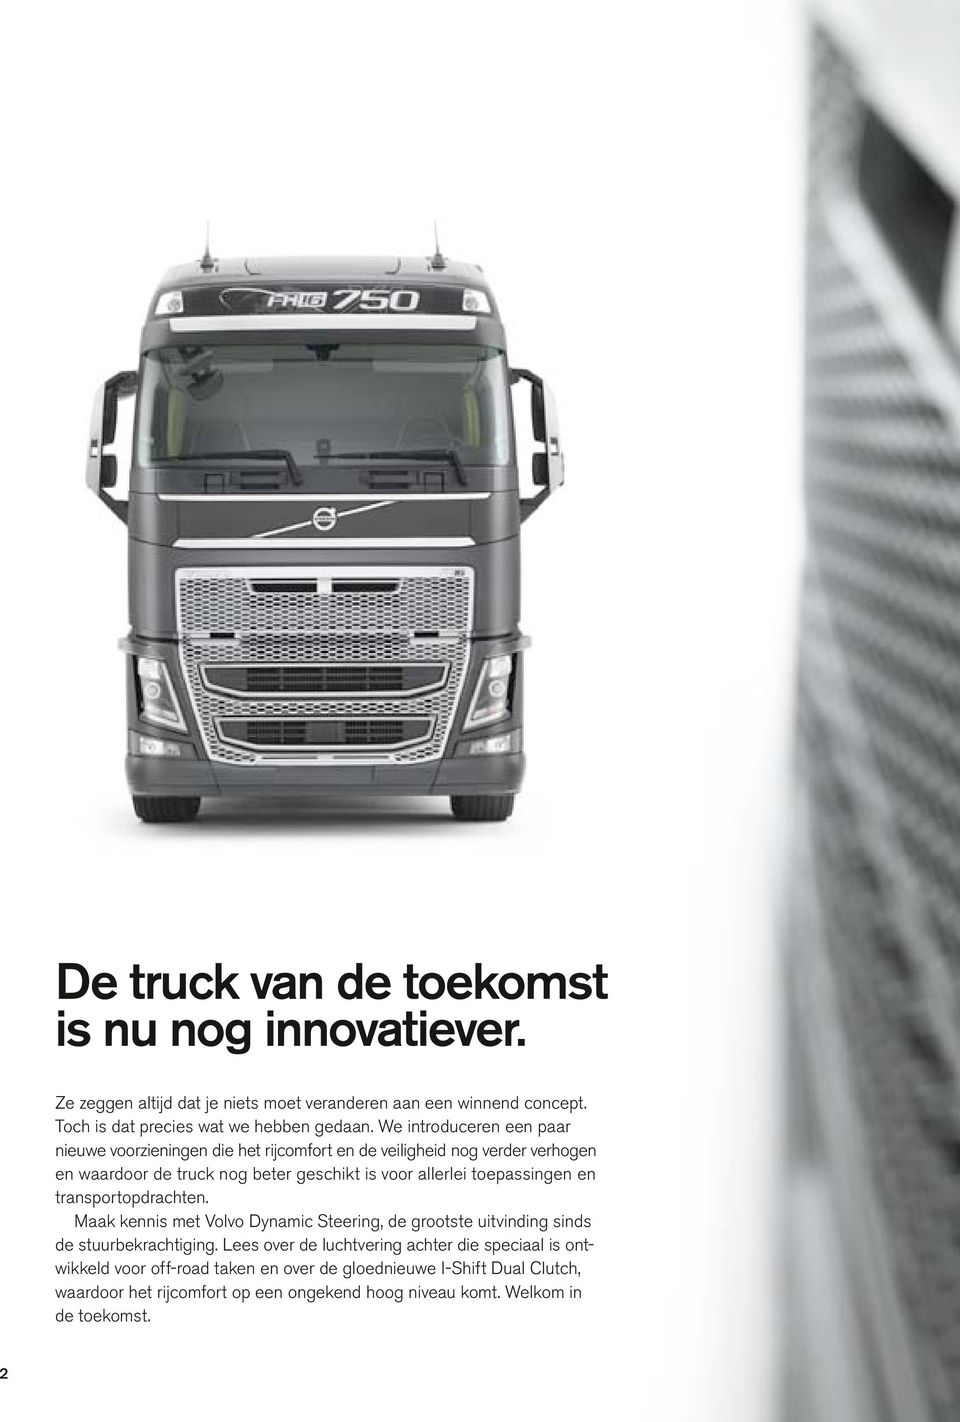 toepassingen en transportopdrachten. Maak kennis met Volvo Dynamic Steering, de grootste uitvinding sinds de stuurbekrachtiging.